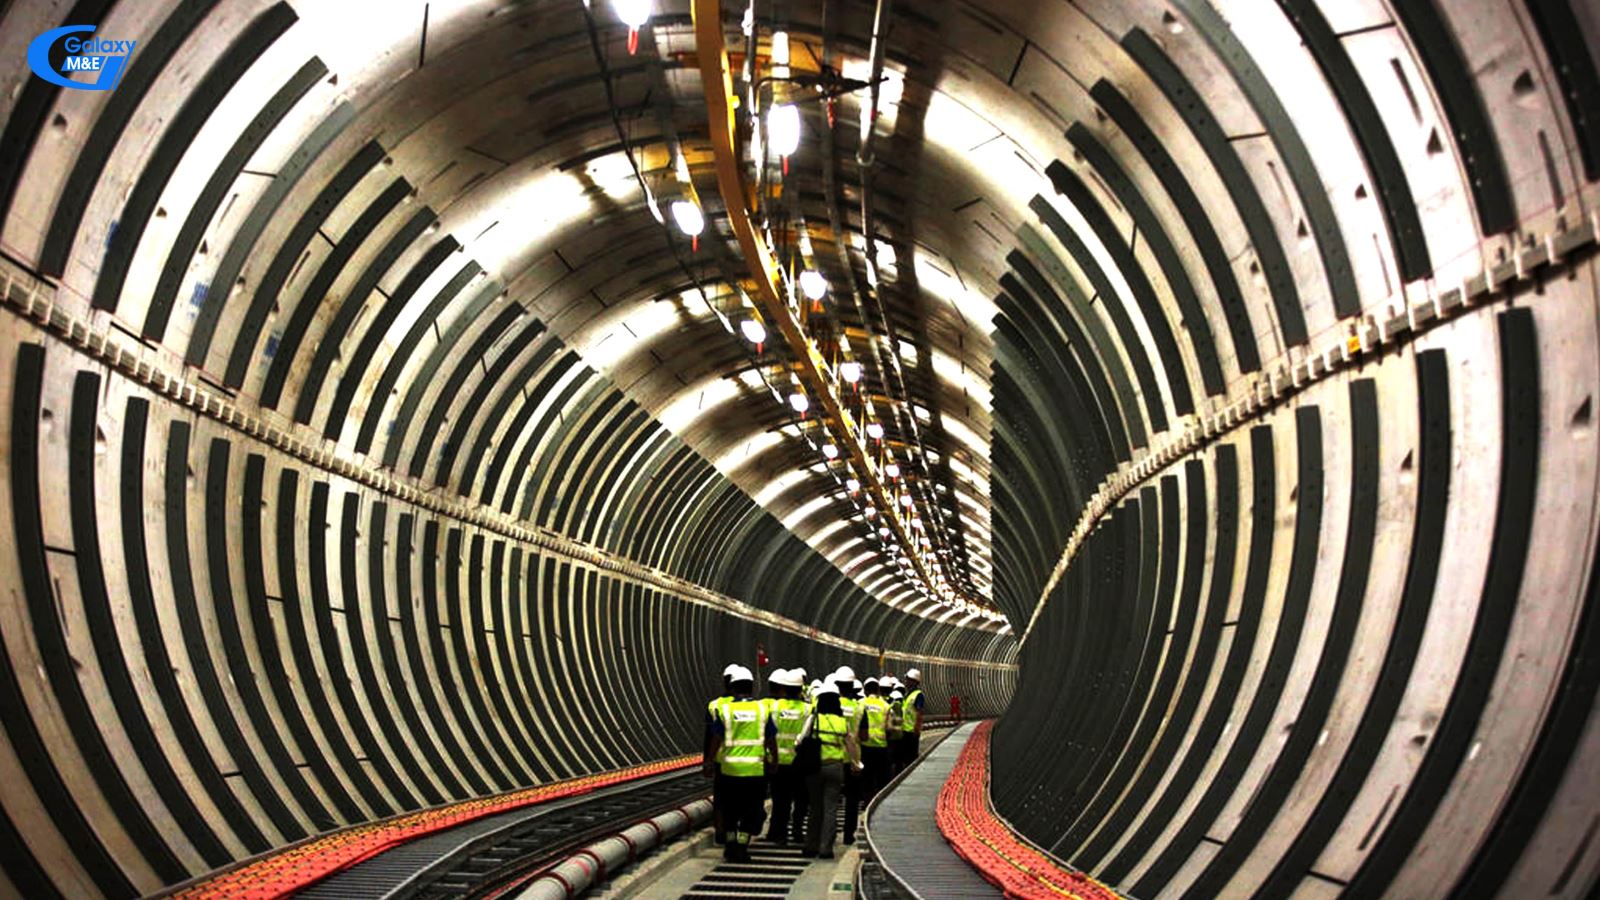 Hệ thống cáp điện ngầm tại Singapore dài 40 Km, rộng 6 m, sâu 60 m đến 80 m so với mặt nước biển. Chúng có thể chứa 1.200 Km cáp điện cao thế. Hệ thống này được xây dựng với số tiền lên đến 2.4 tỷ đô la Singapore | Galaxy M&E.